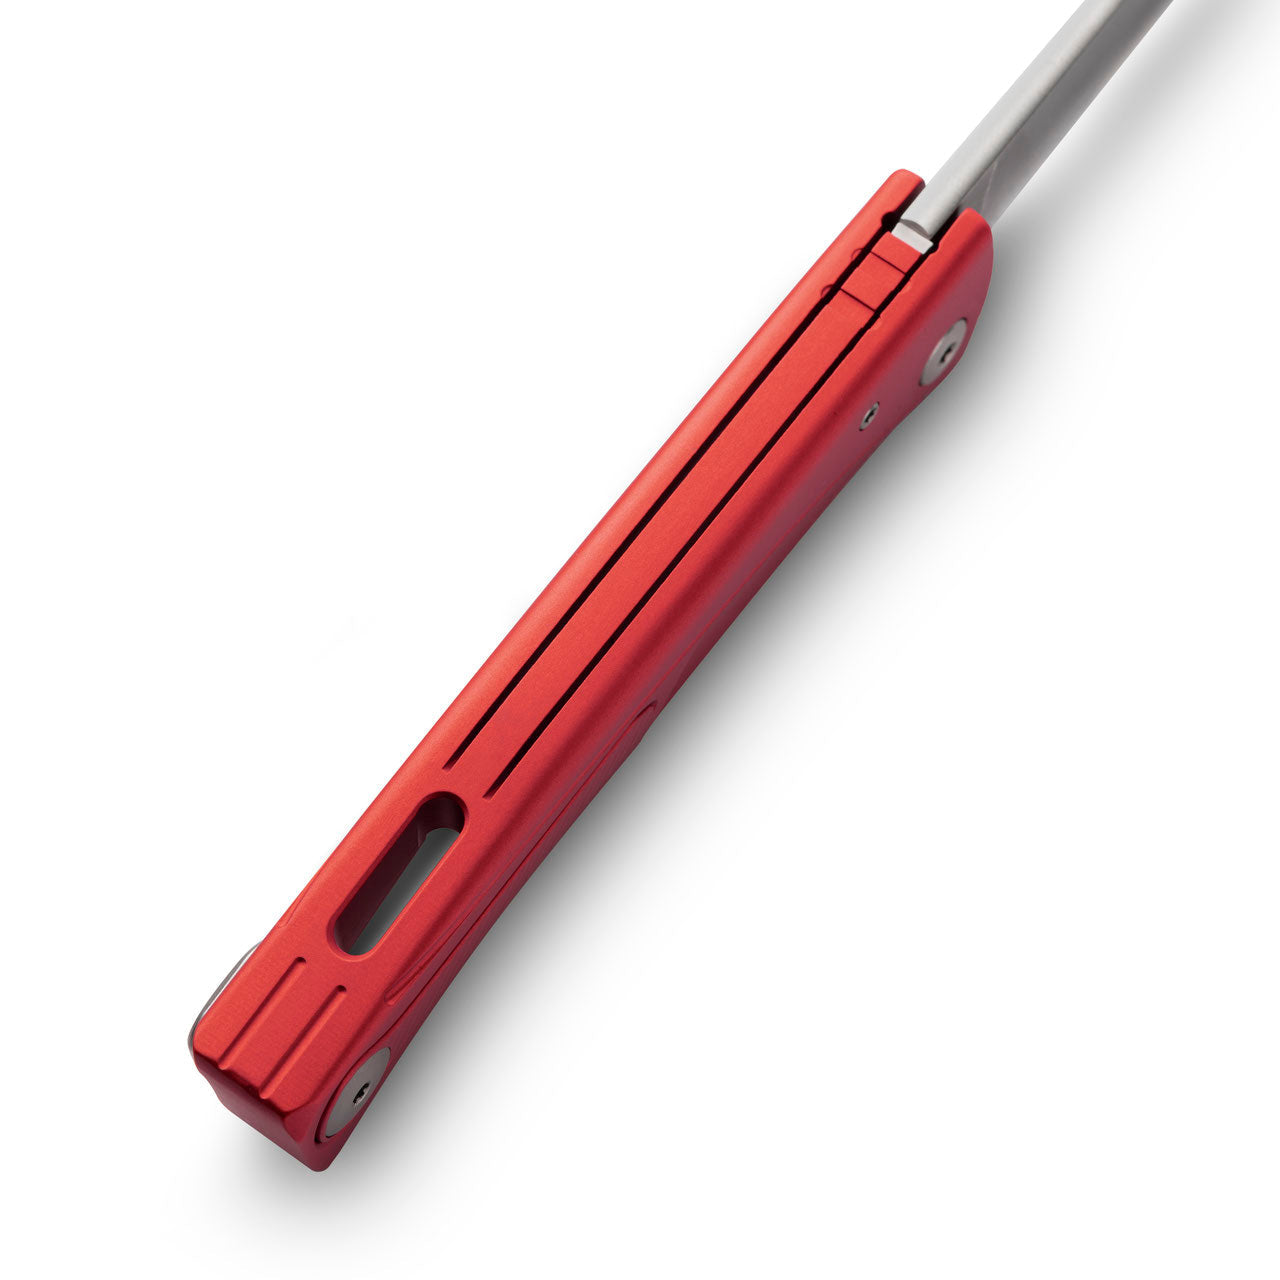 Thrill Aluminium - Red-lionSTEEL-OnlyKnives